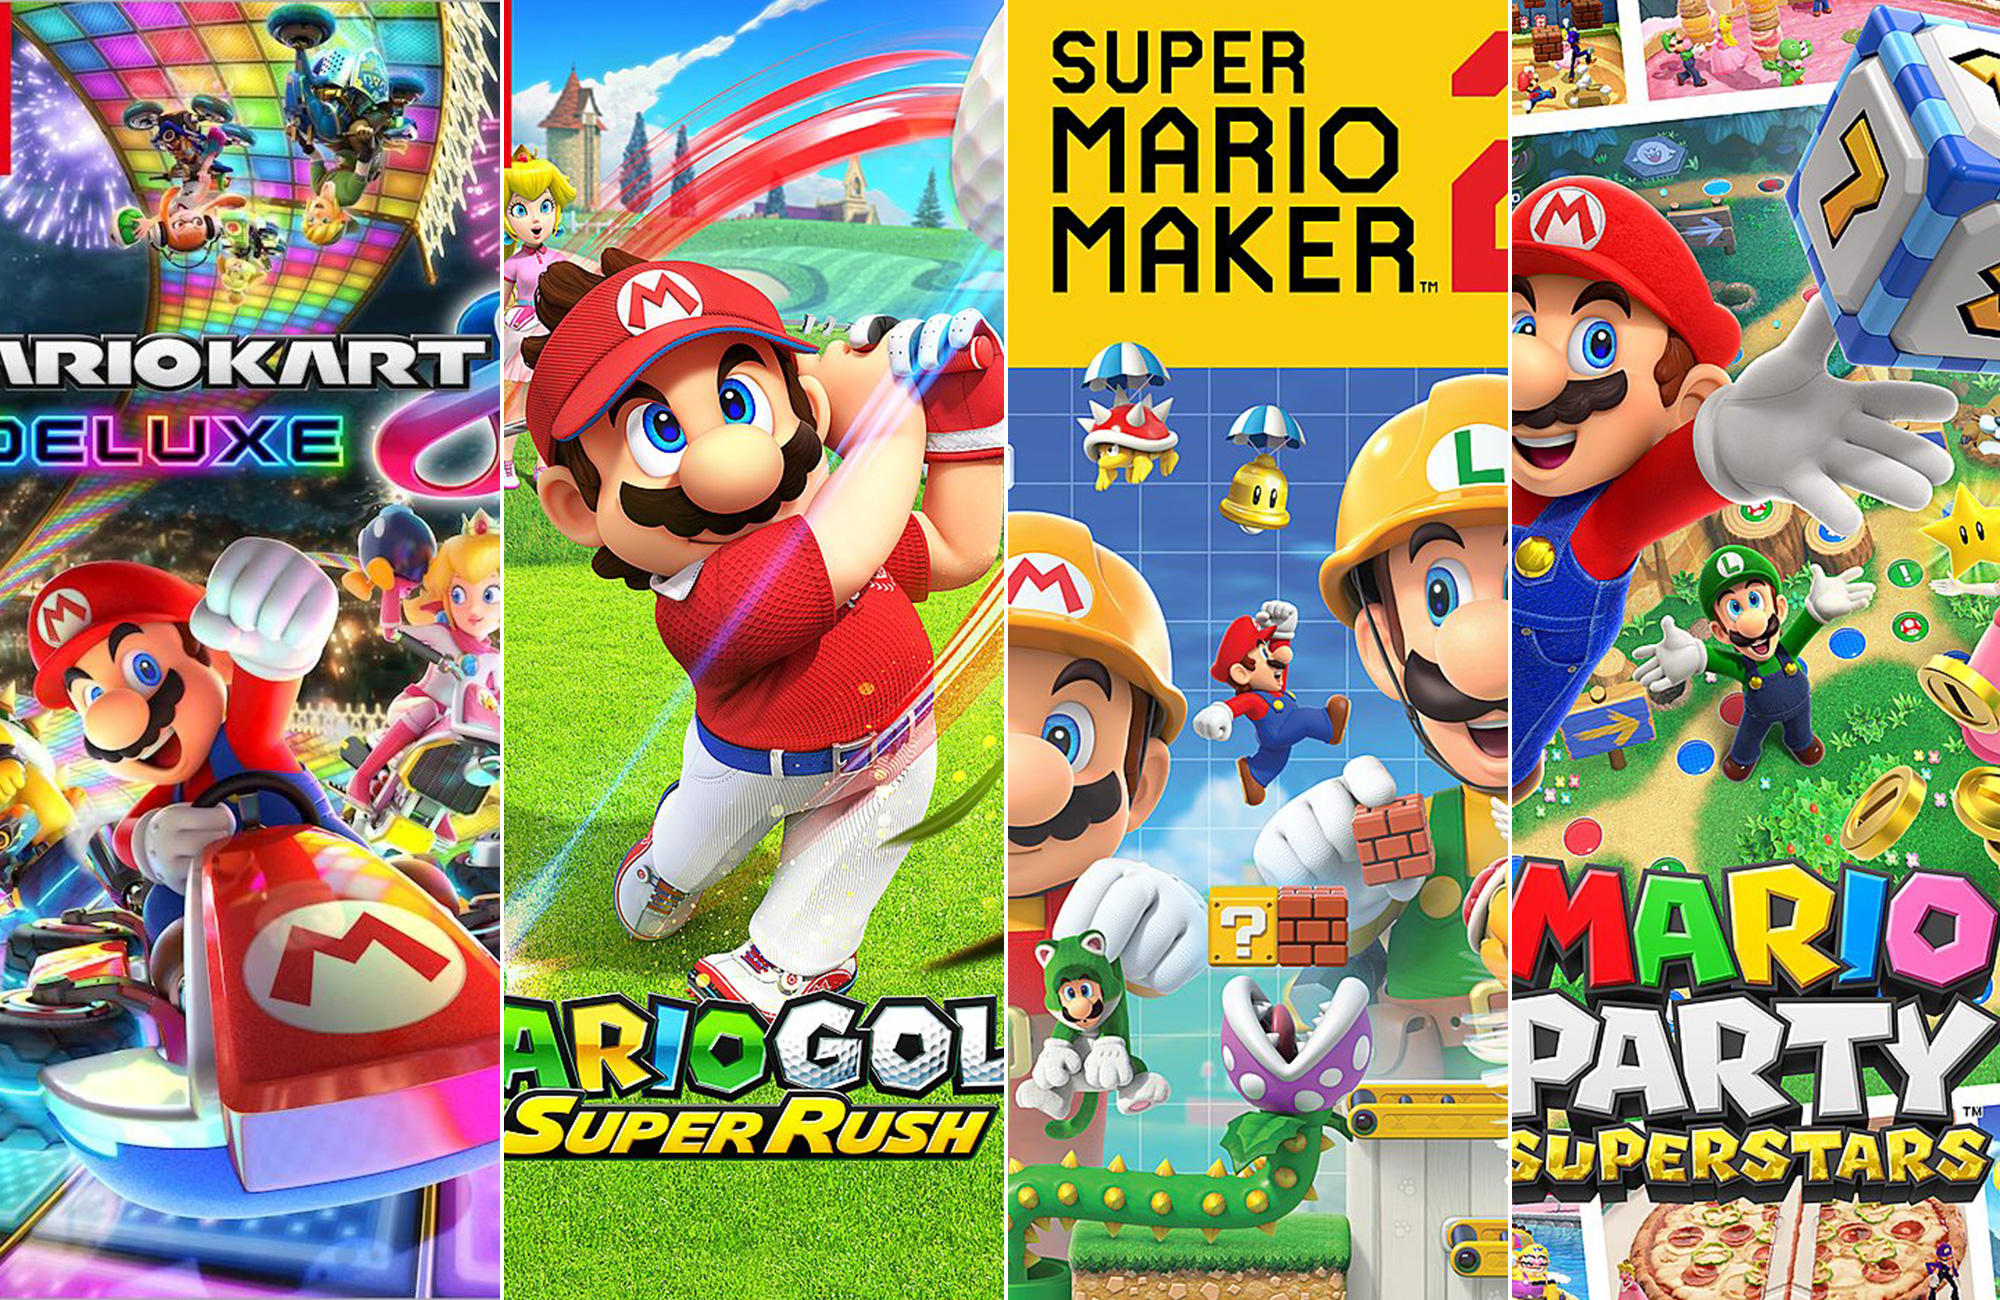 Os 10 Melhores Jogos do Mario para Nintendo Switch de 2023: 3D All